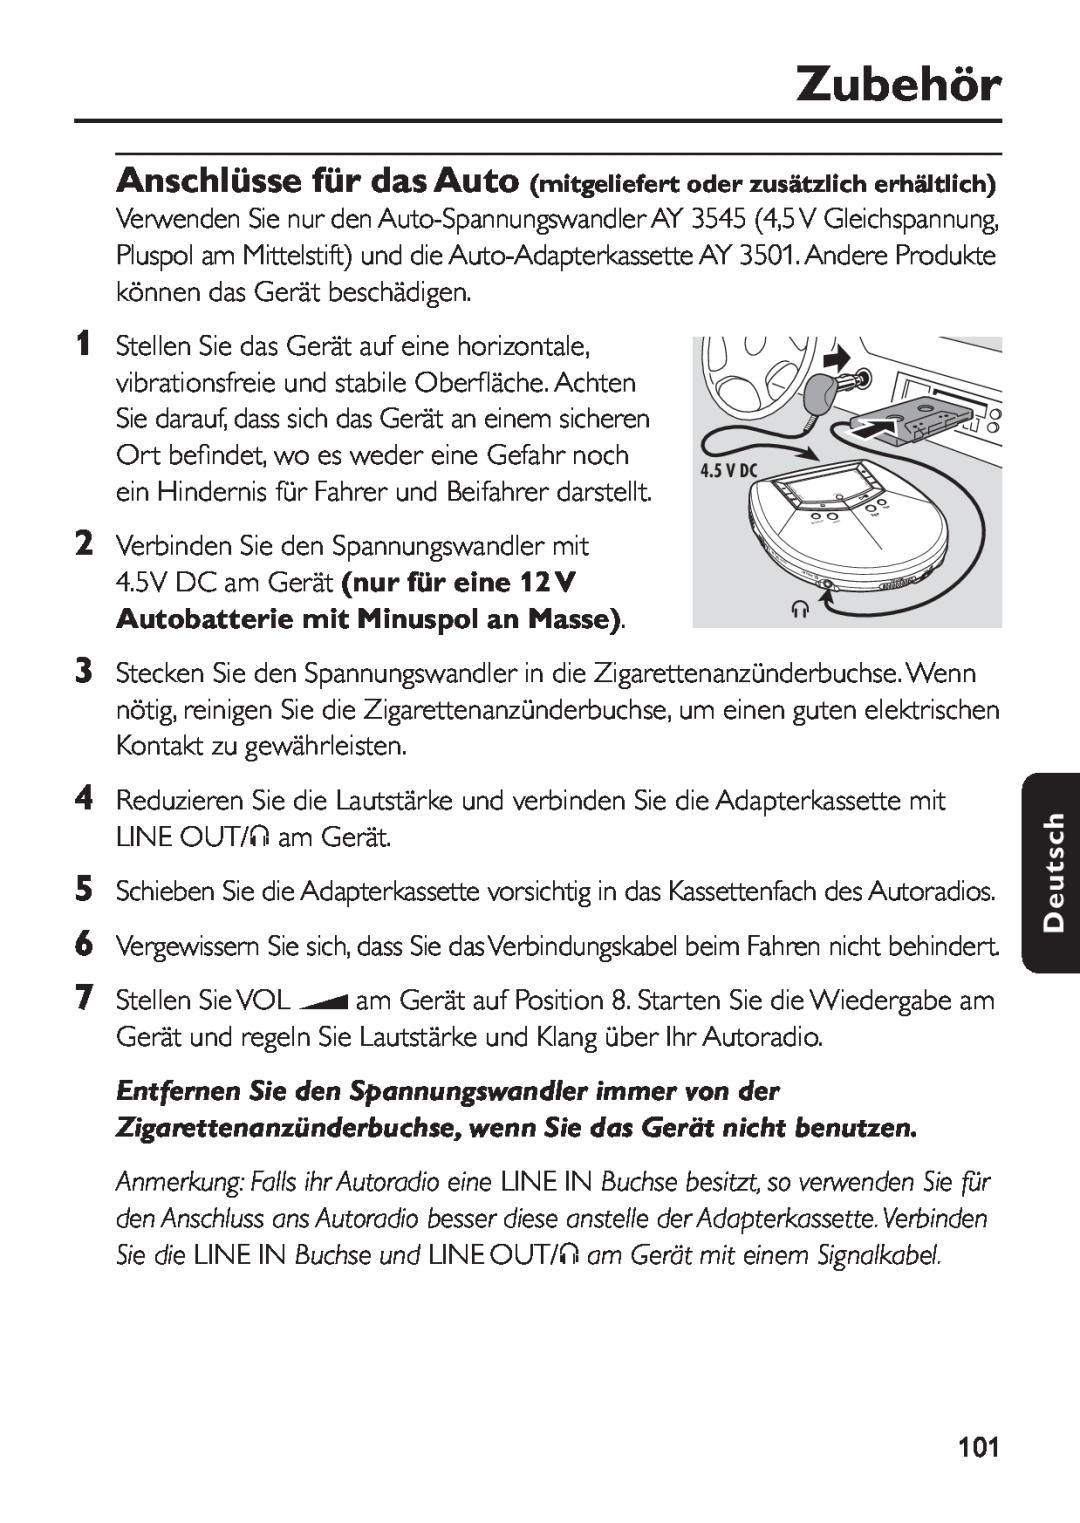 Philips EXP 501/00 manual Zubehör, Deutsch, Anschlüsse für das Auto mitgeliefert oder zusätzlich erhältlich 